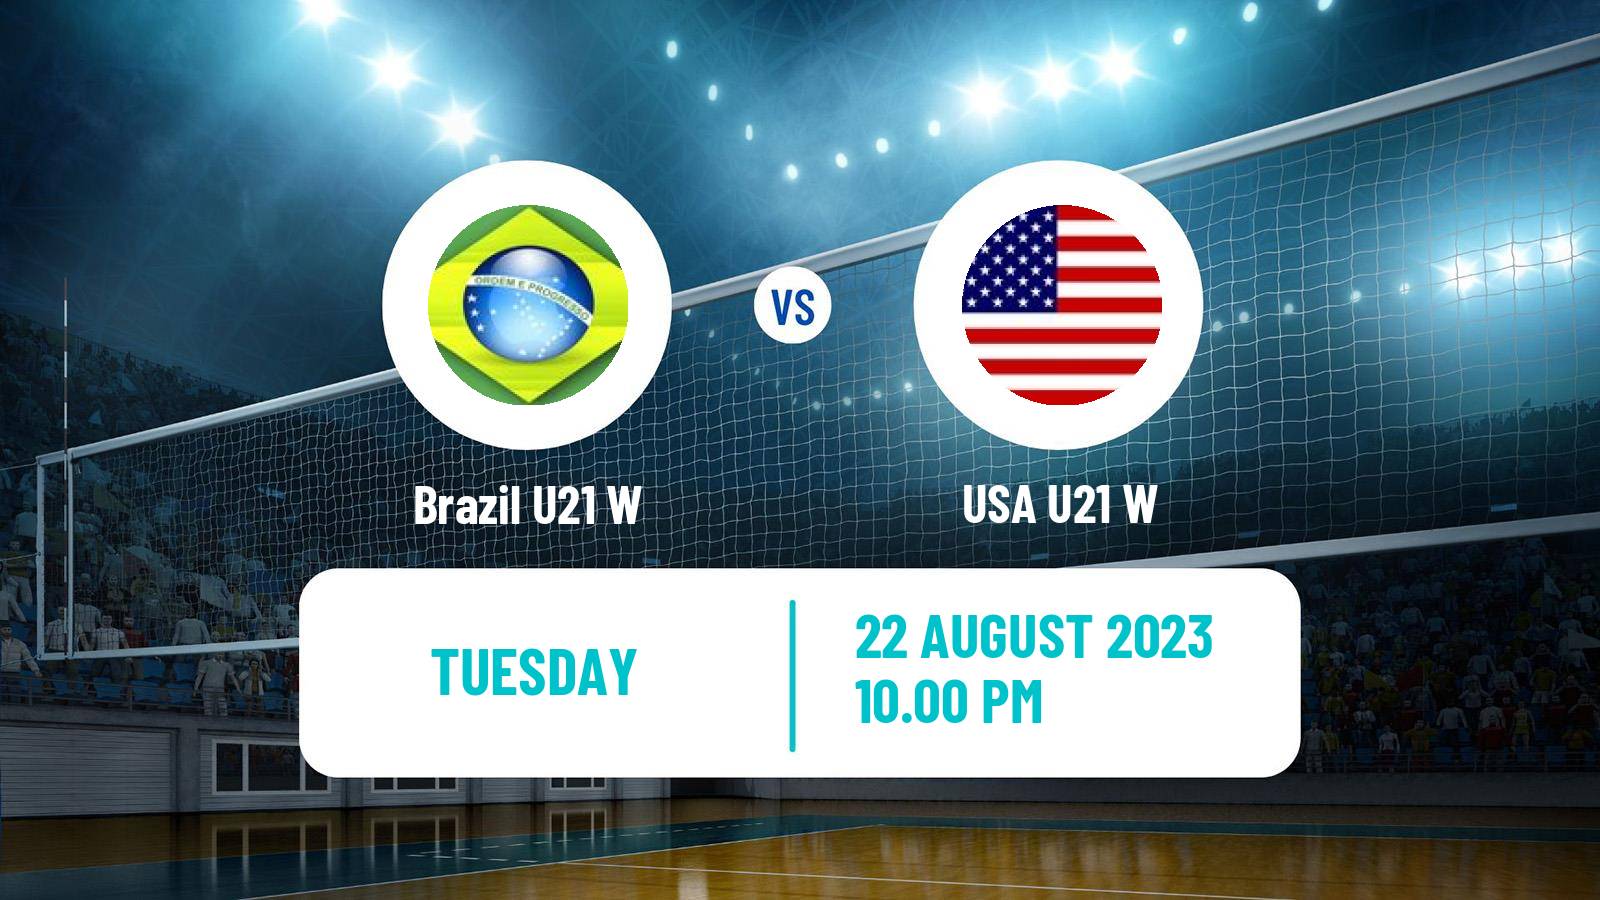 Volleyball World Championship U21 Volleyball Women Brazil U21 W - USA U21 W